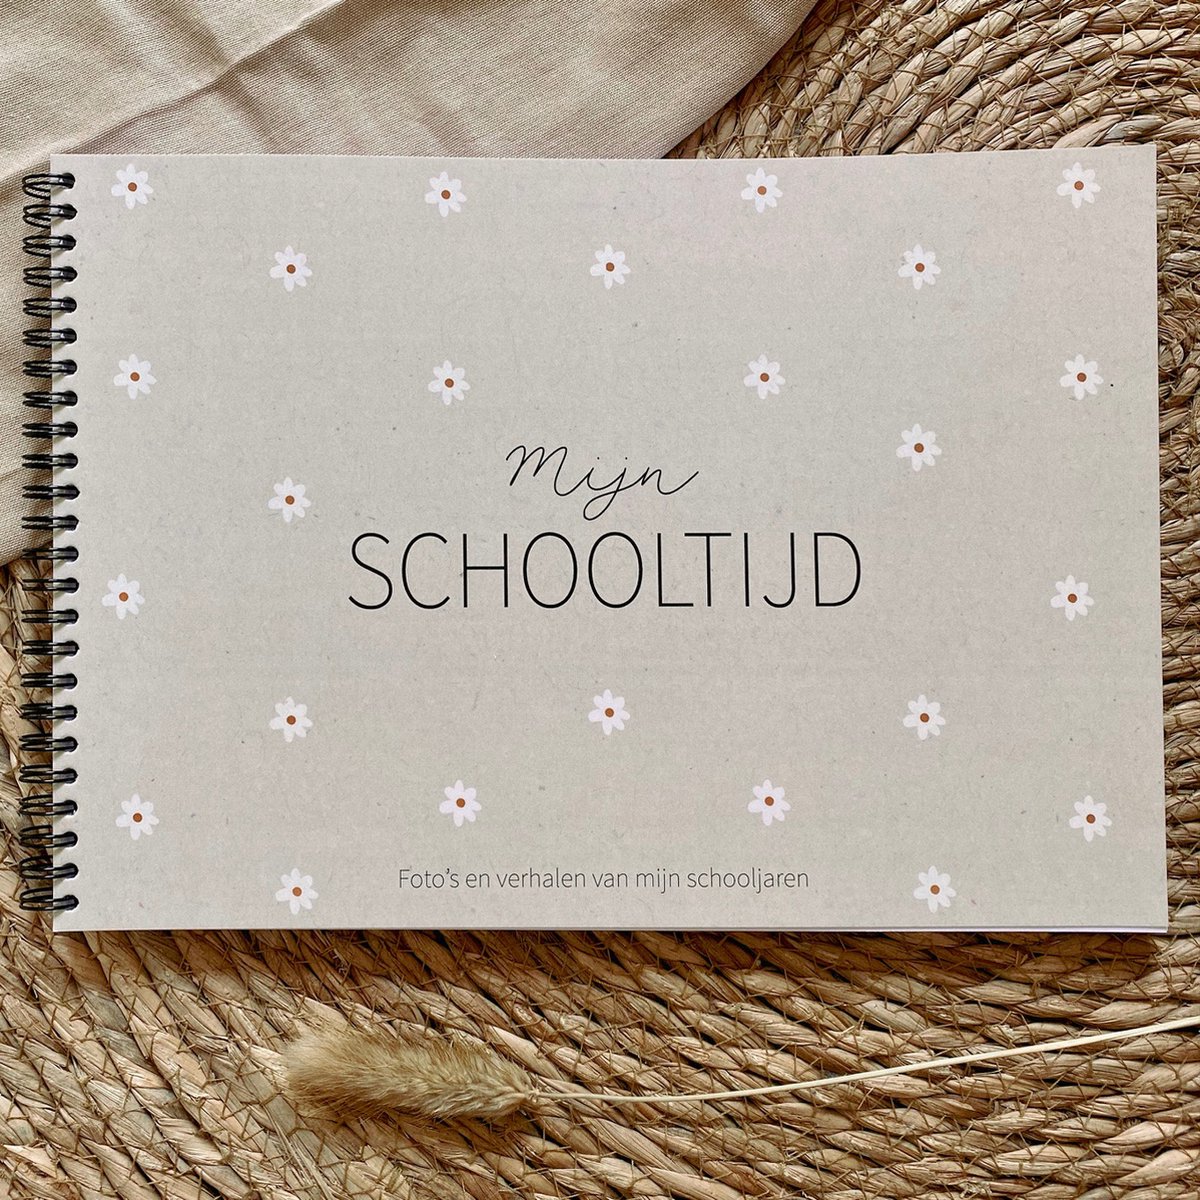 Writemoments - Schoolfotoboek 'Mijn schooltijd' - madelief - schoolfoto's - schoolfoto album - schoolfoto invulboek